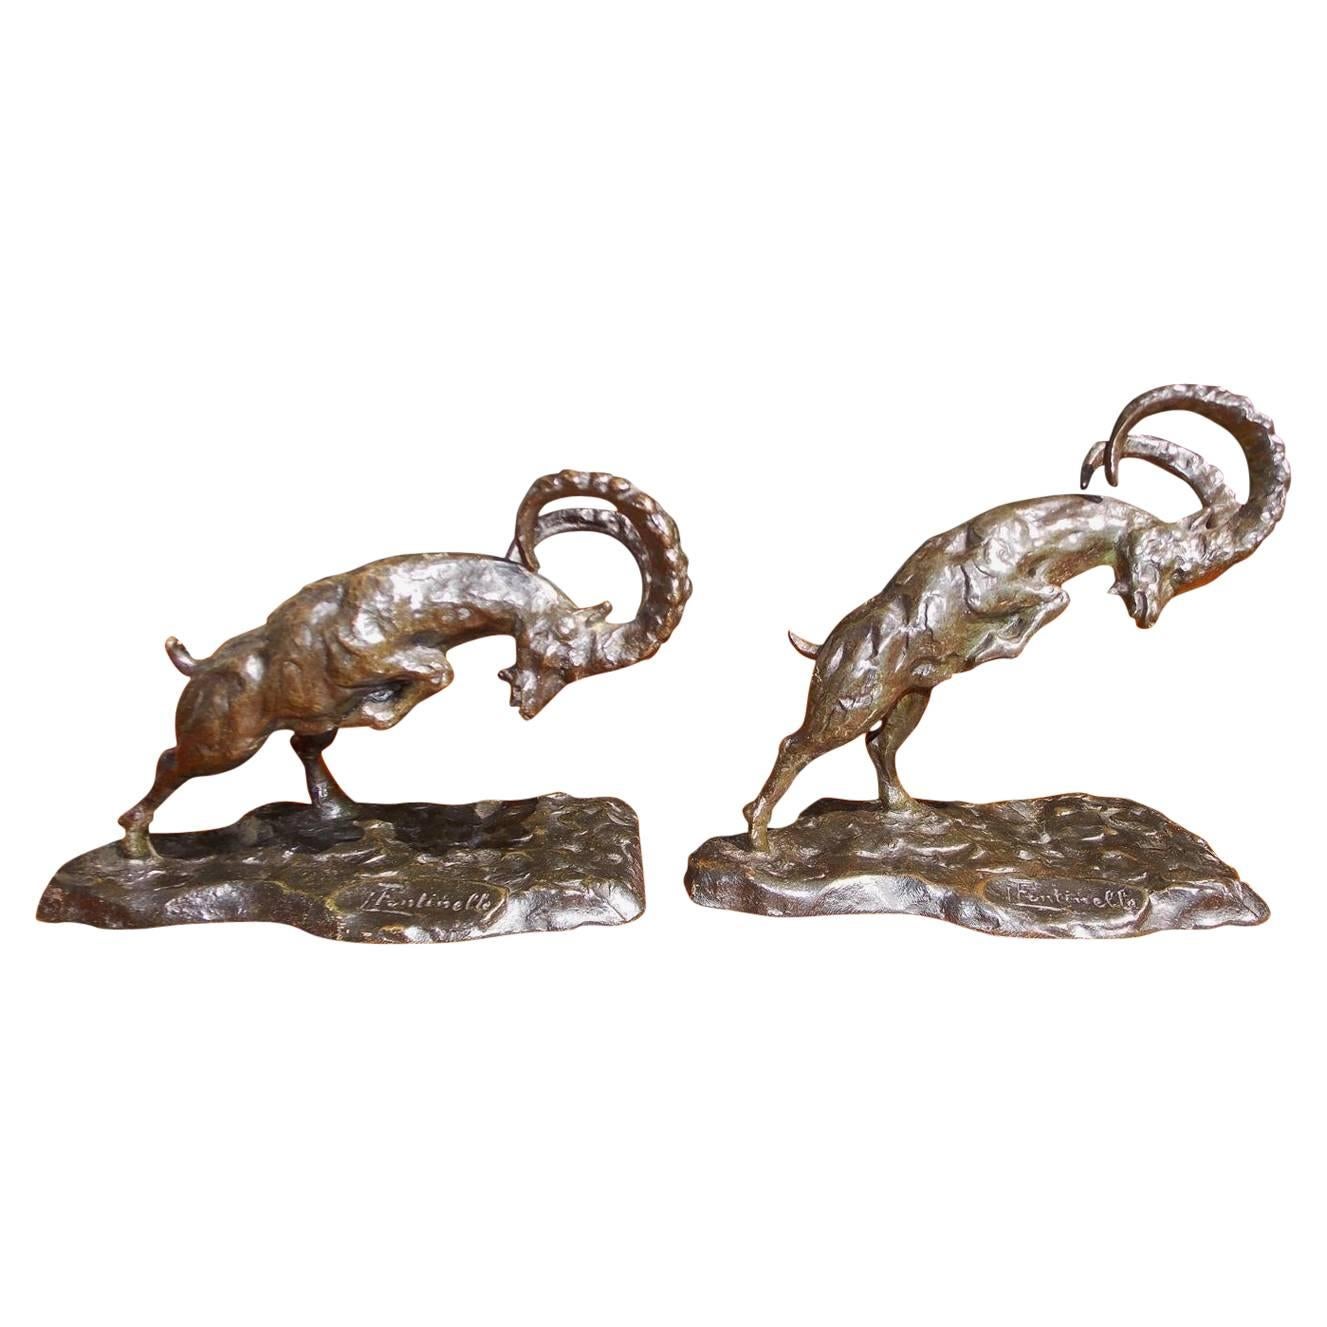 Paar französische figurale Widder-Buchstützen aus Bronze, signiert von L. Fontinelle, um 1900